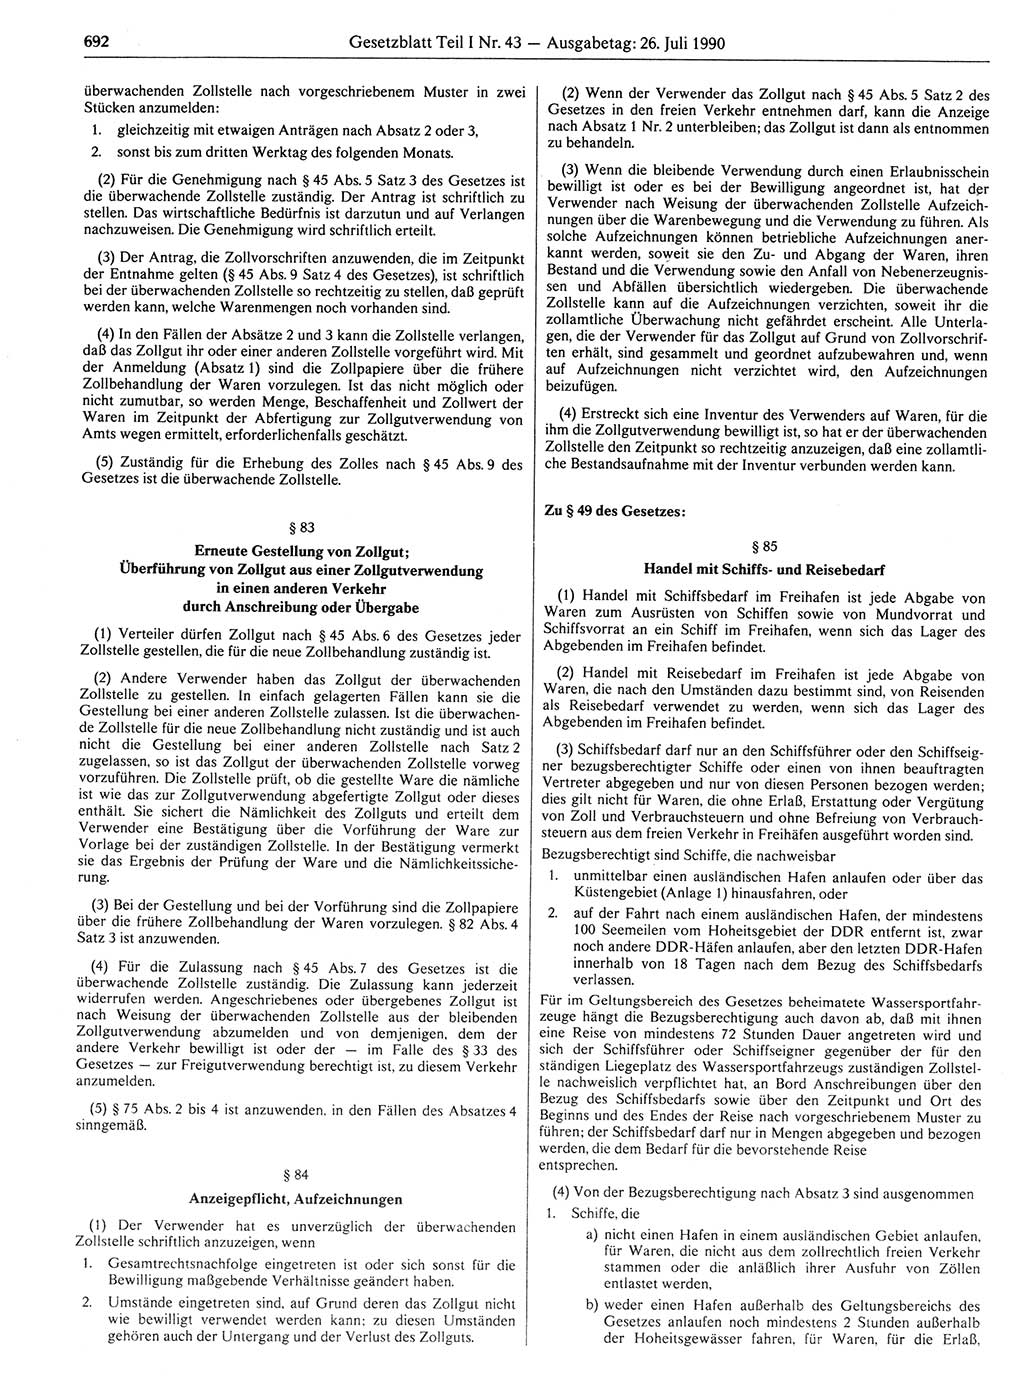 Gesetzblatt (GBl.) der Deutschen Demokratischen Republik (DDR) Teil Ⅰ 1990, Seite 692 (GBl. DDR Ⅰ 1990, S. 692)